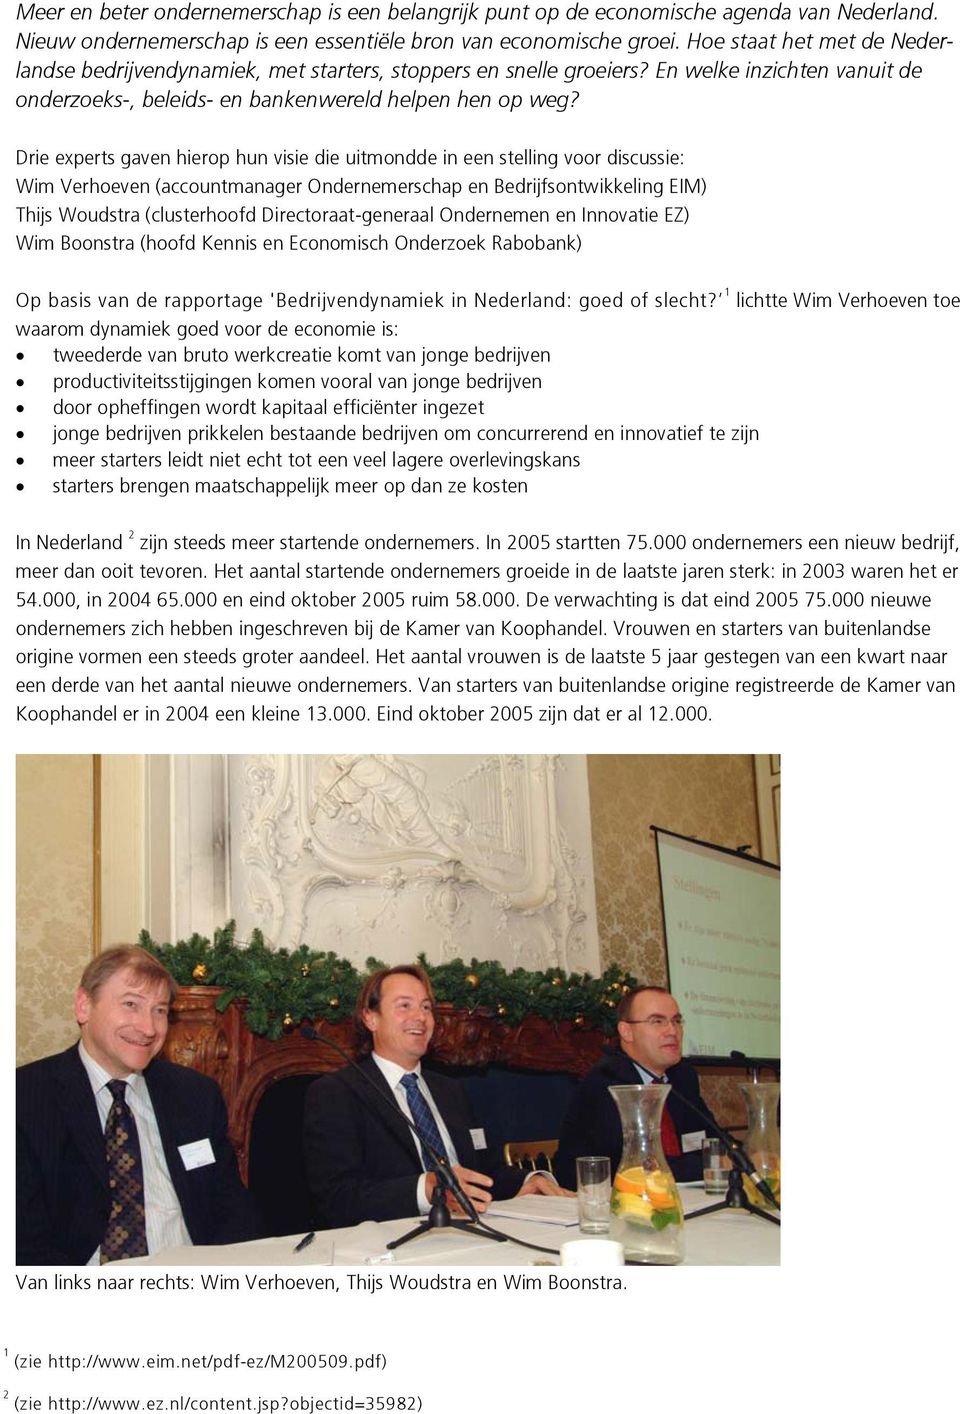 Drie experts gaven hierop hun visie die uitmondde in een stelling voor discussie: Wim Verhoeven (accountmanager Ondernemerschap en Bedrijfsontwikkeling EIM) Thijs Woudstra (clusterhoofd